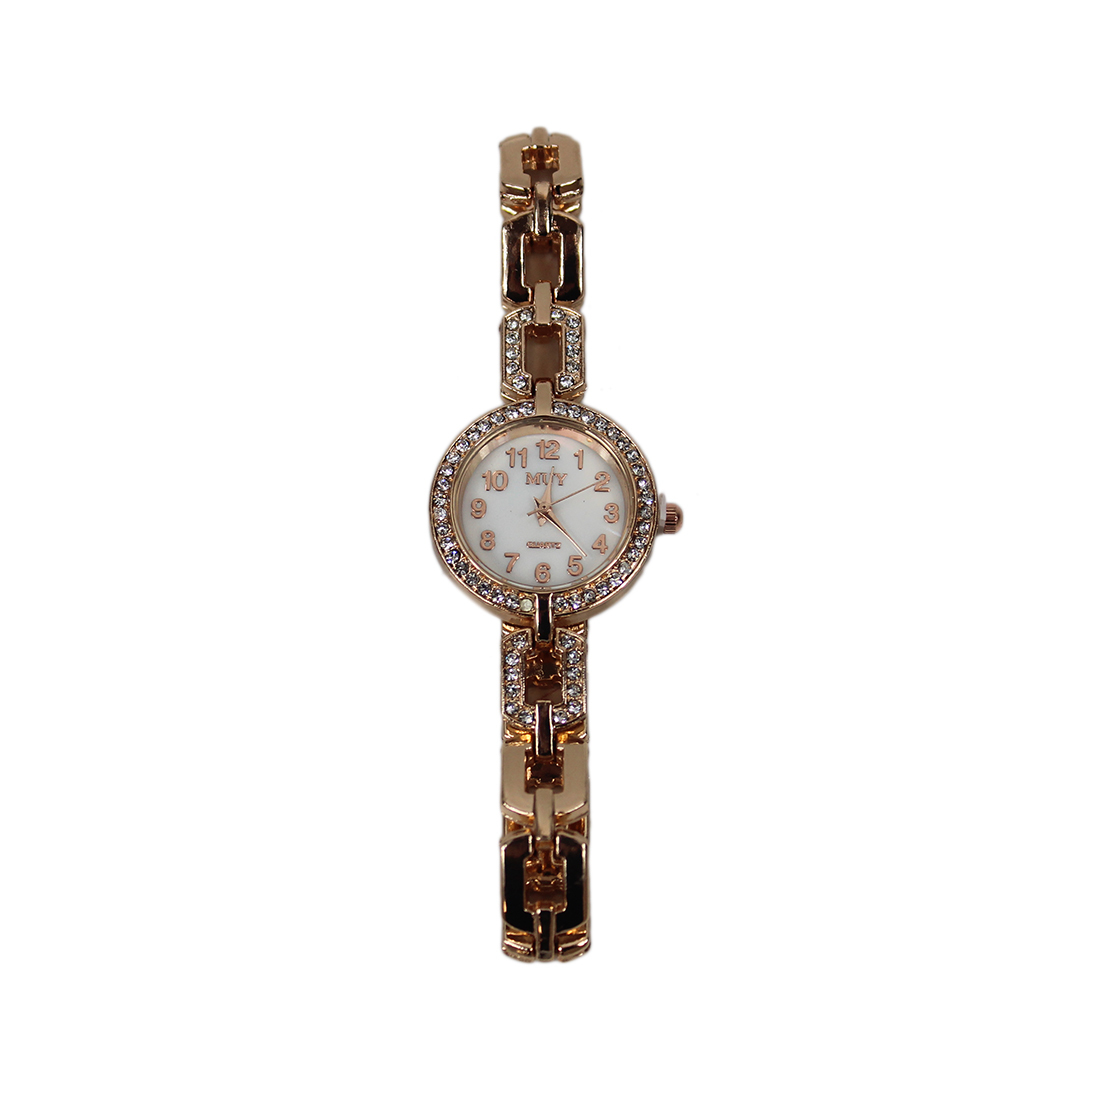 Fancy thin elegant watch